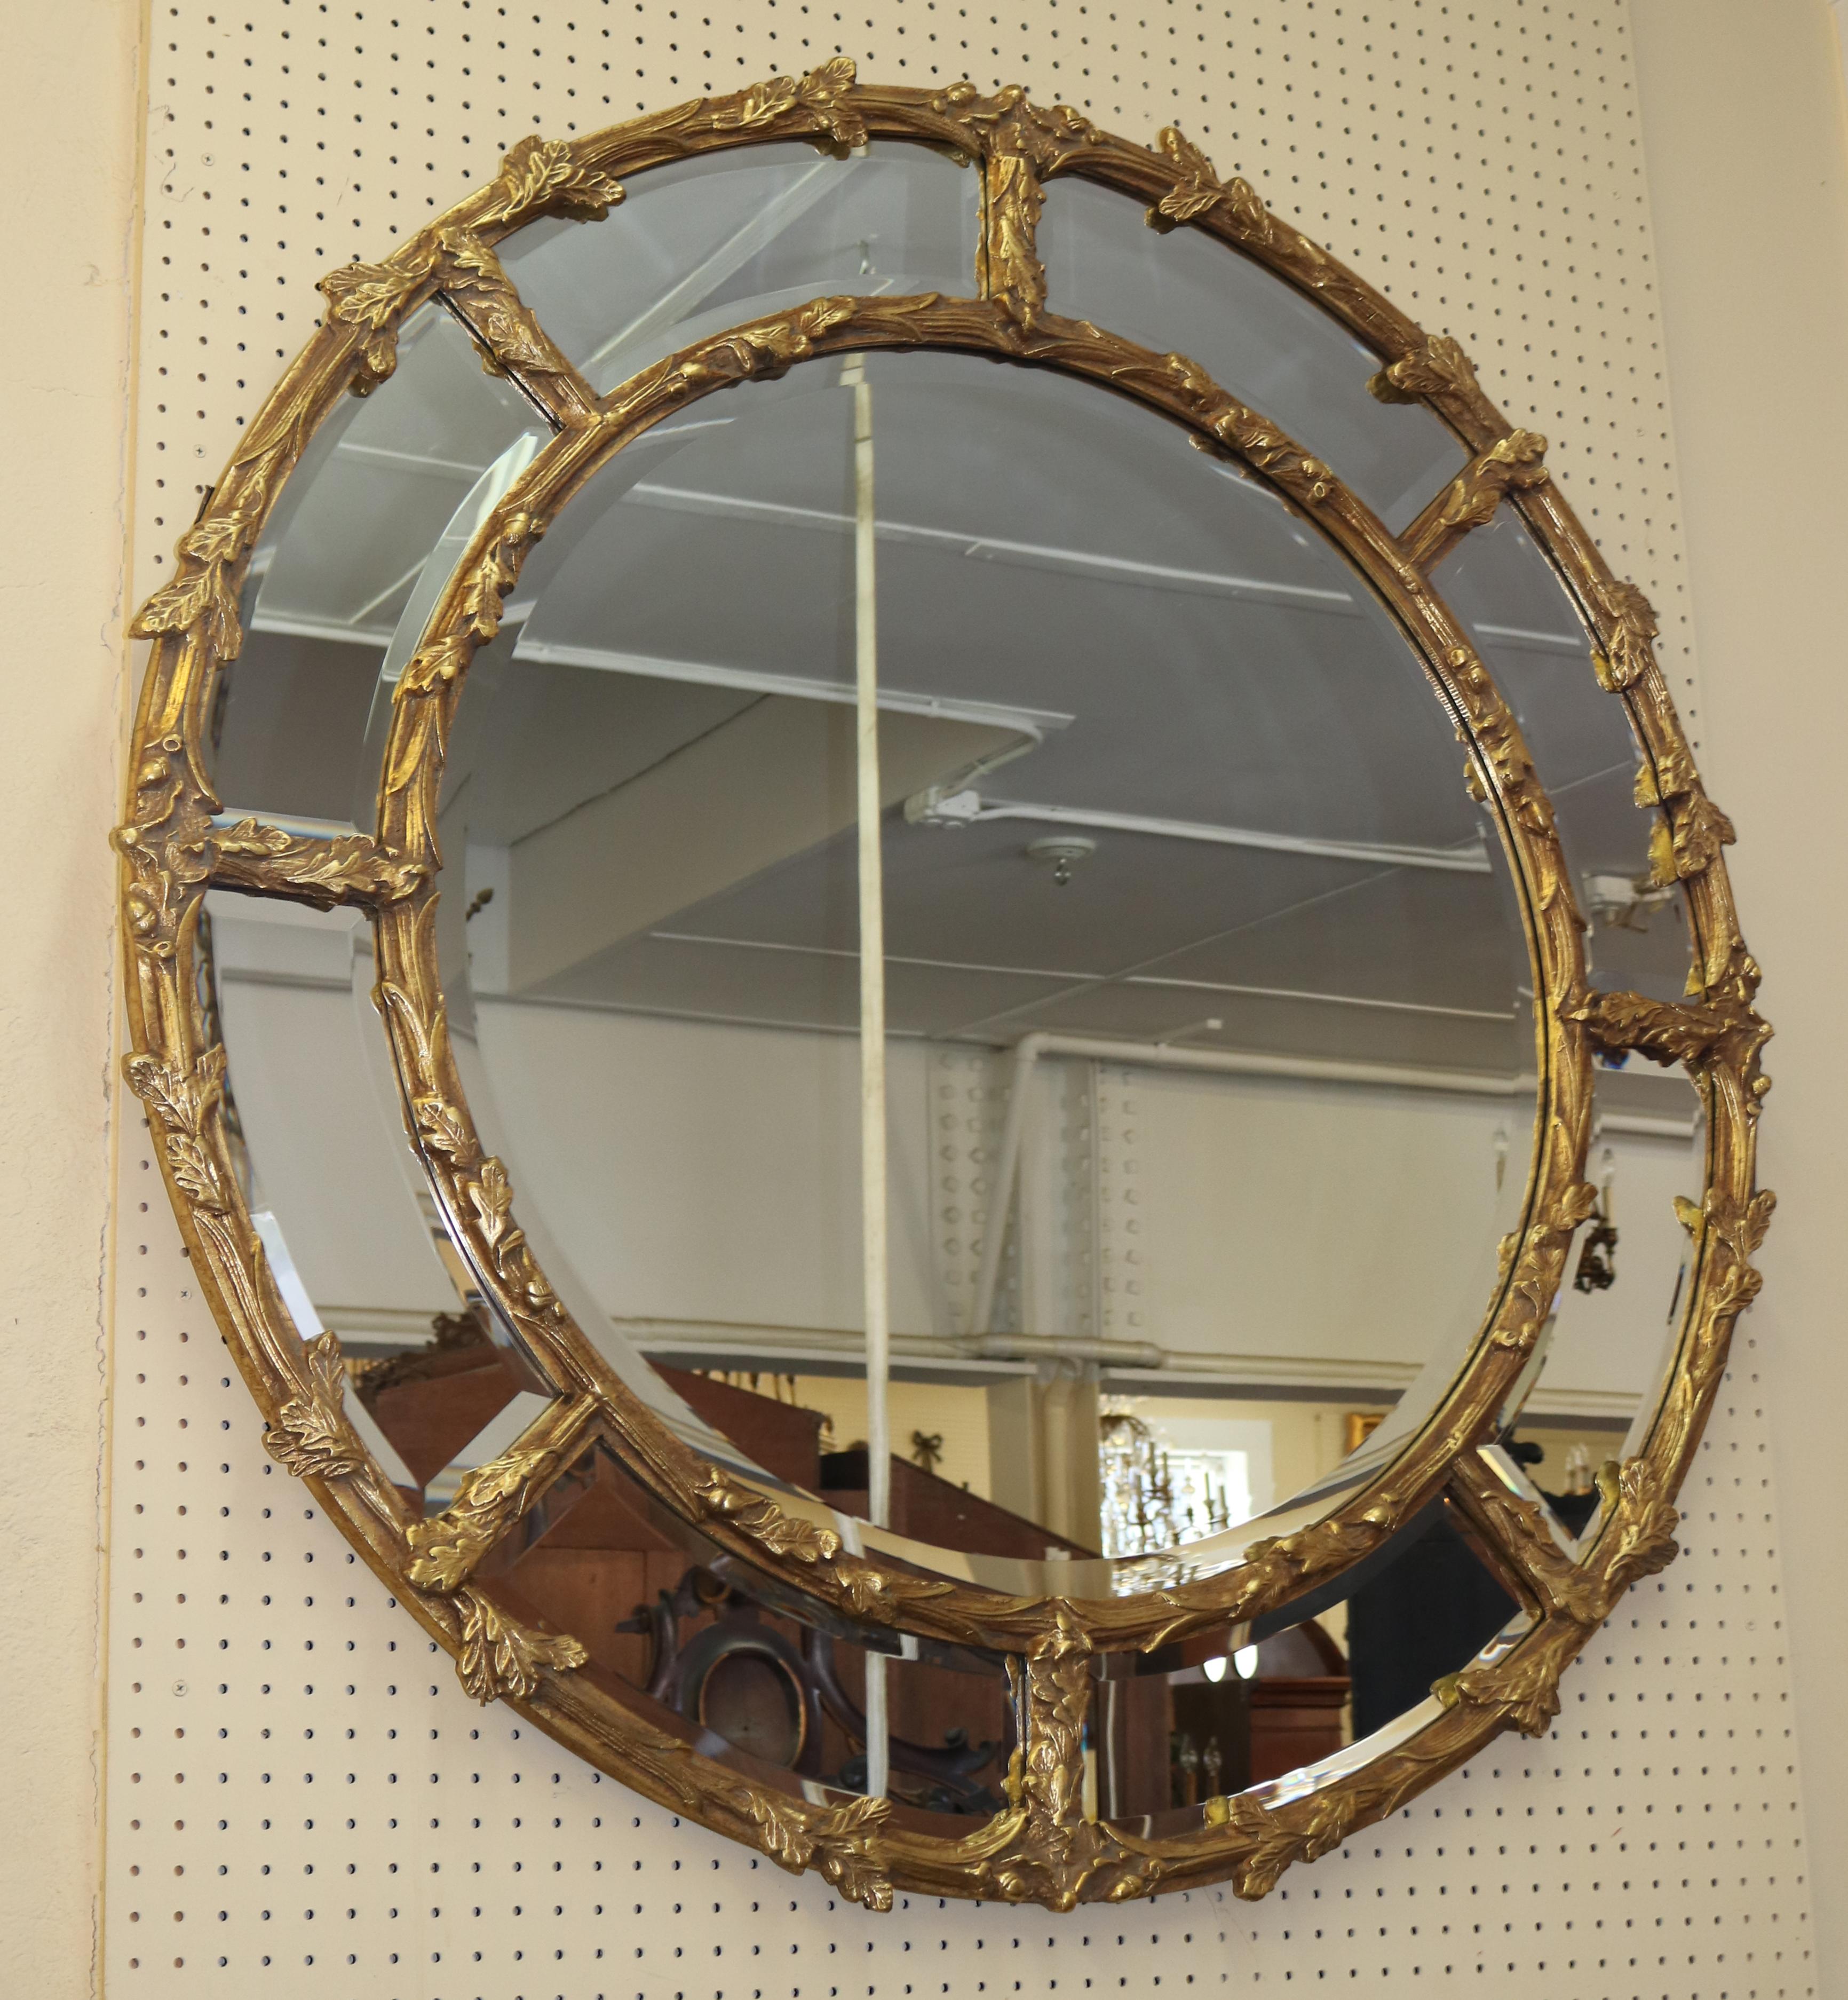 Superbe grand miroir rond biseauté en bois doré à suspendre

Dimensions : 48 X 48 X 2

Ce magnifique miroir doré est stupéfiant. La qualité du cadre et le biseau du miroir sont de premier ordre. Un miroir identique est actuellement sur le marché